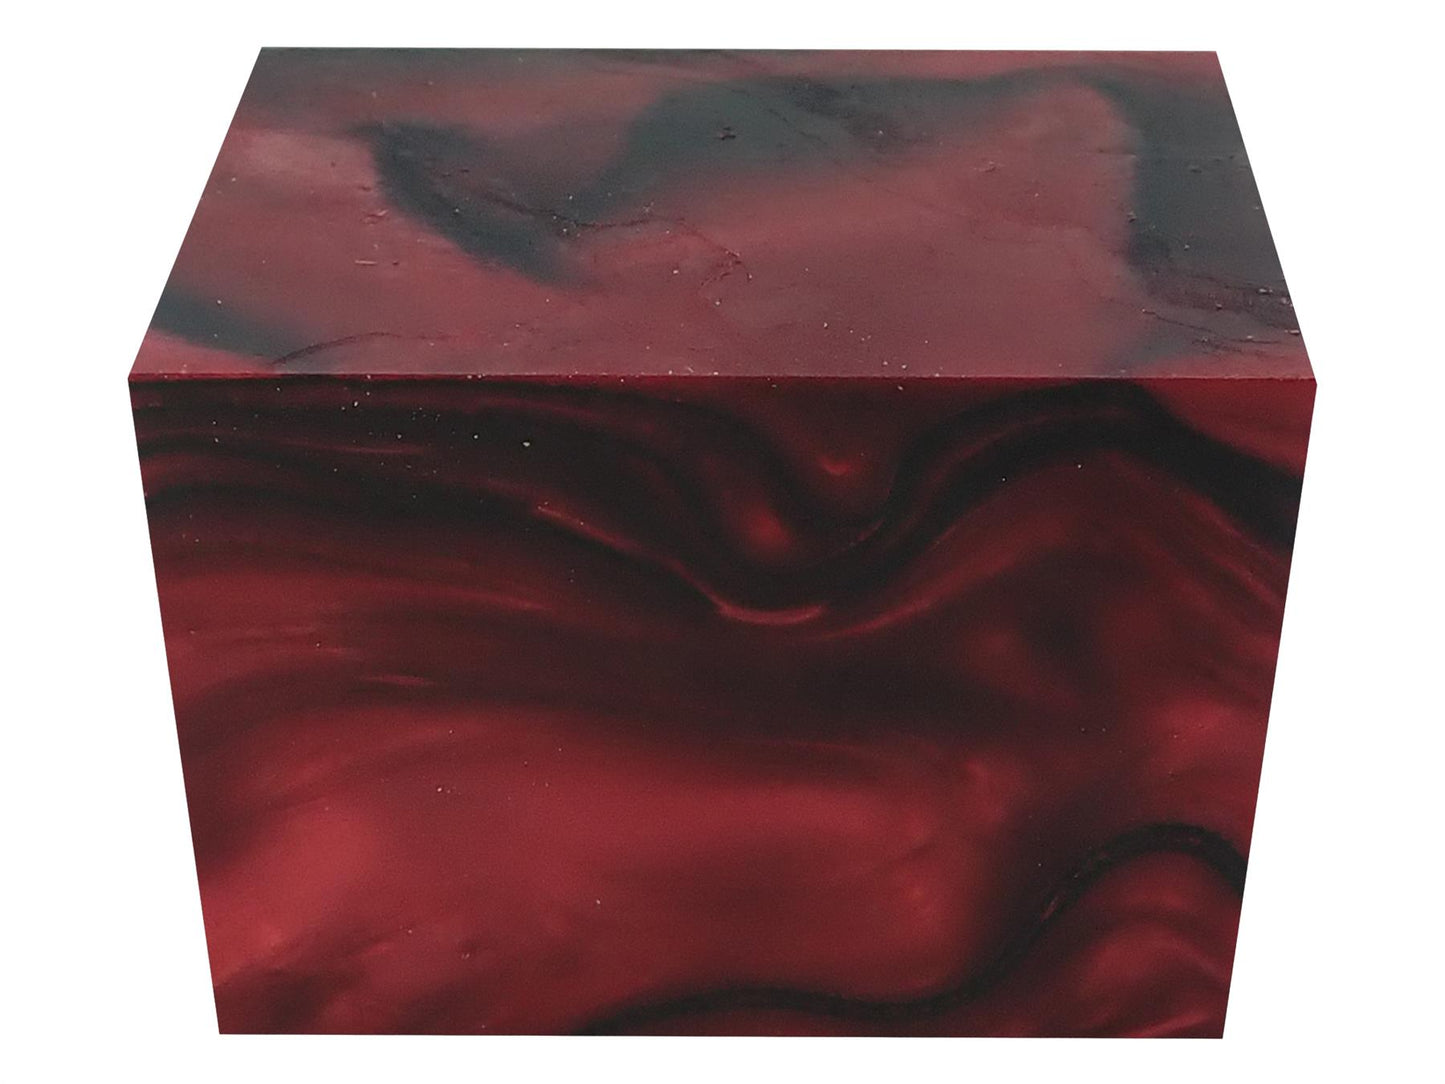 Turners' Mill True Blood Abstract Kirinite Acrylic Block - 64x42x42mm (2.5x1.65x1.65")